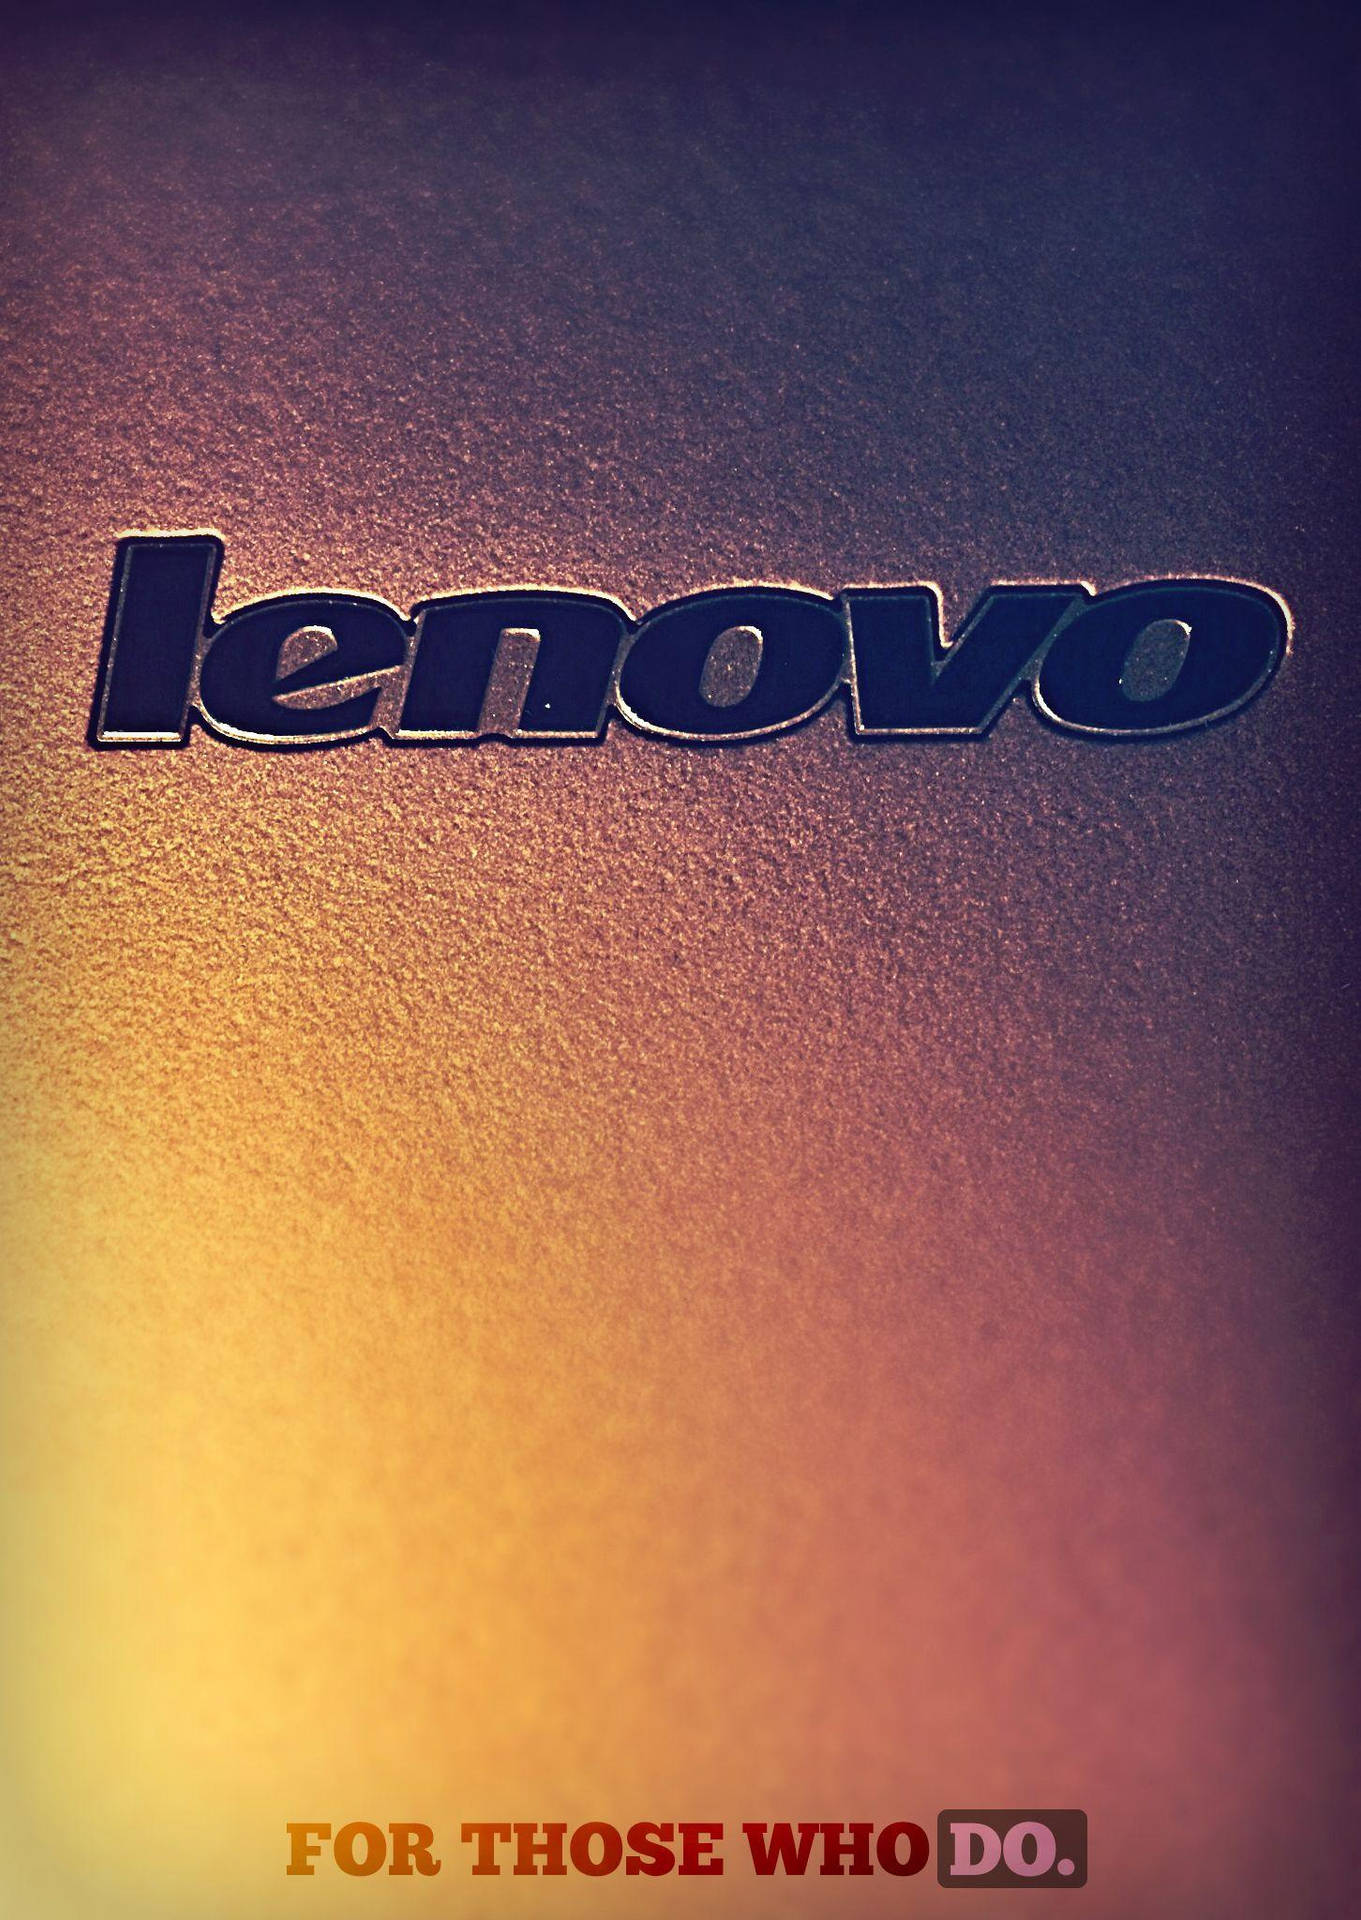 Hình nền  đen Lenovo ThinkPad môi phông chữ Đóng lên 2048x1600 px  2048x1600   545700  Hình nền đẹp hd  WallHere